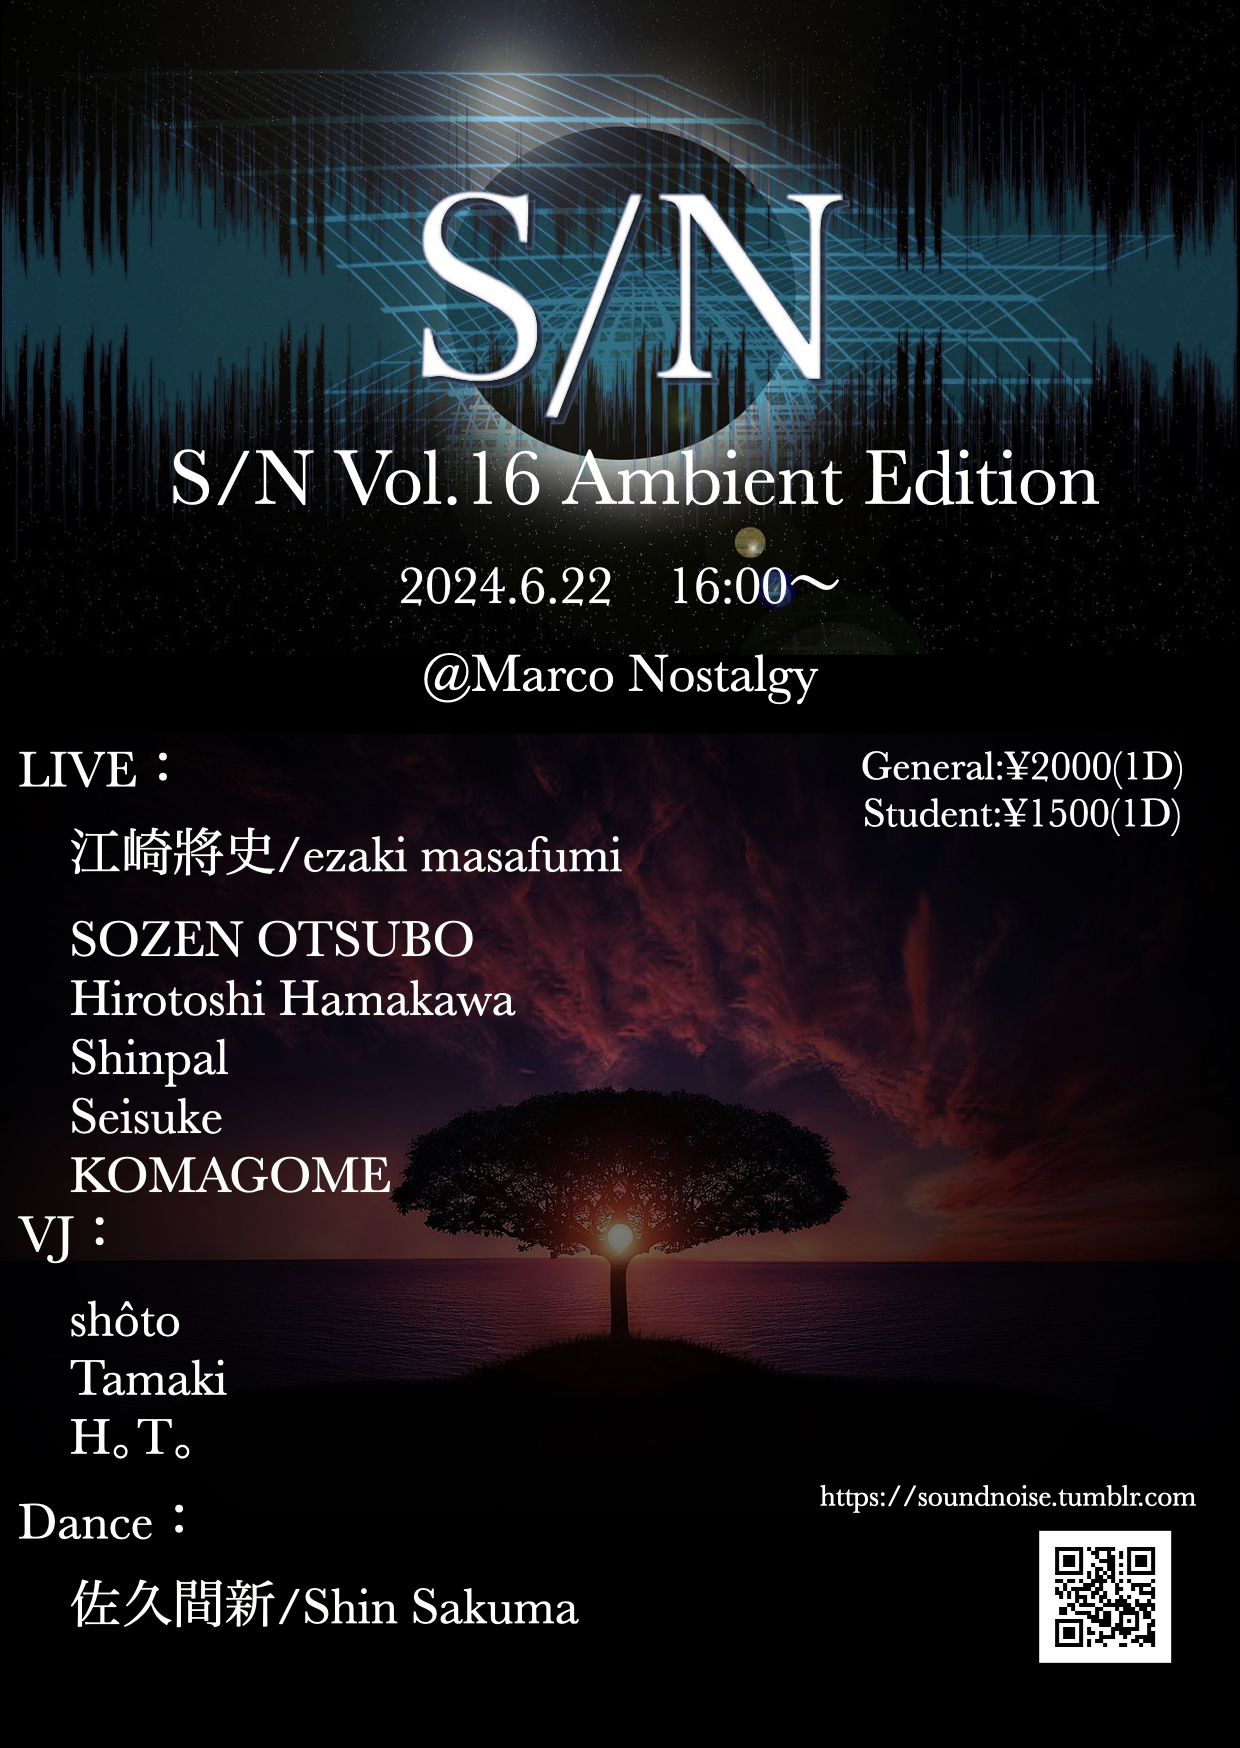 【特集】S/N Vol.16 Ambient Edition - サウンドとノイズの境界を考える電子音楽イベント＠Marco Nostalgy（大阪・内本町）